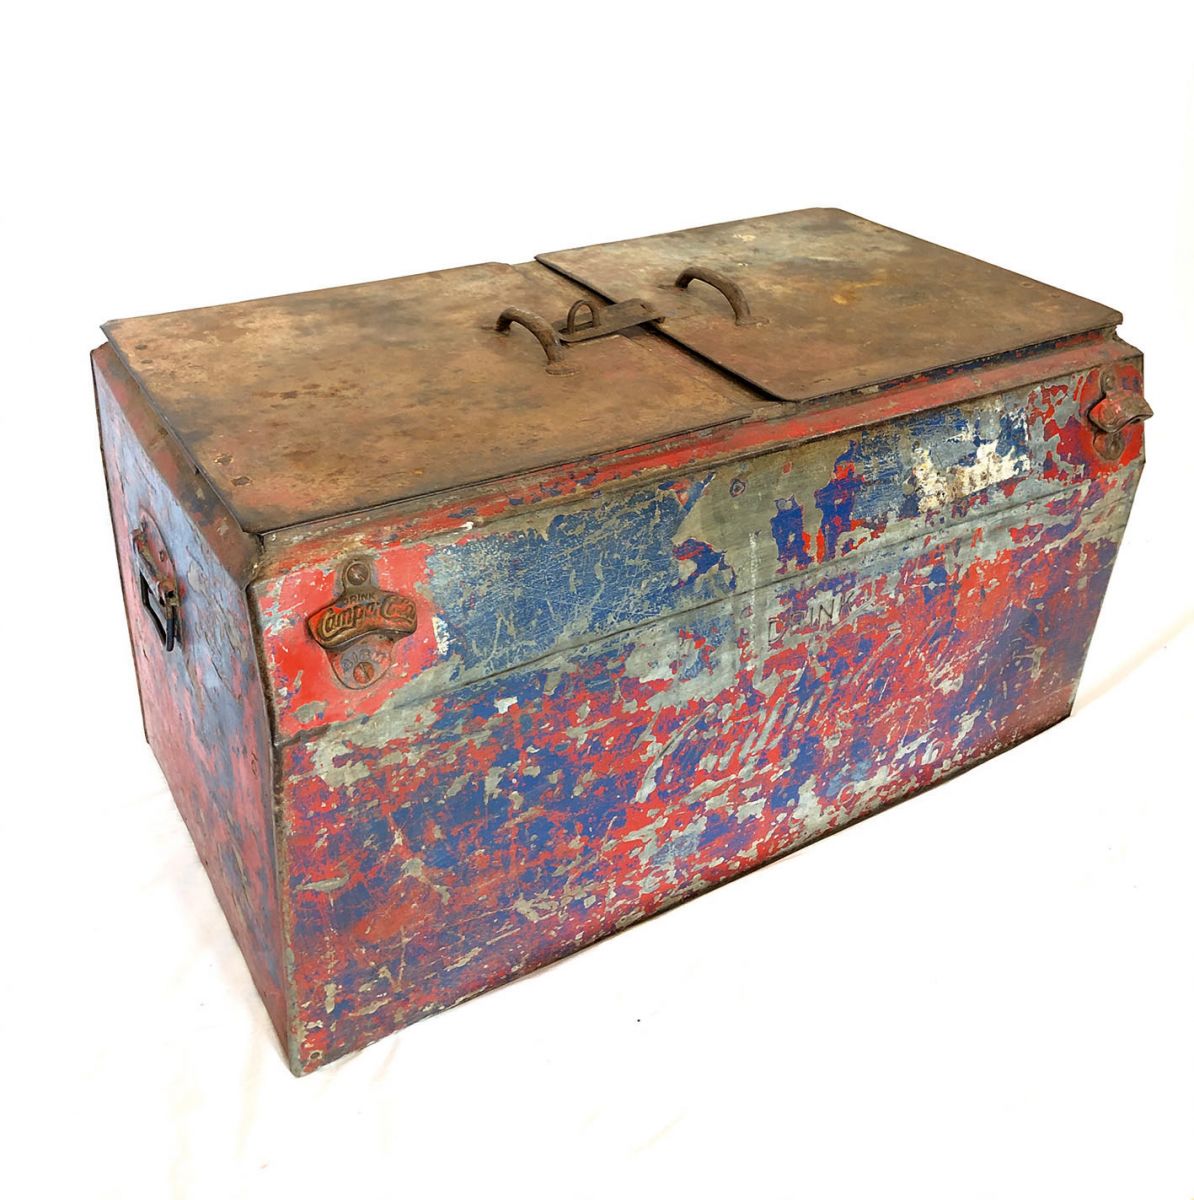 Vintage Campa Cola cooler box